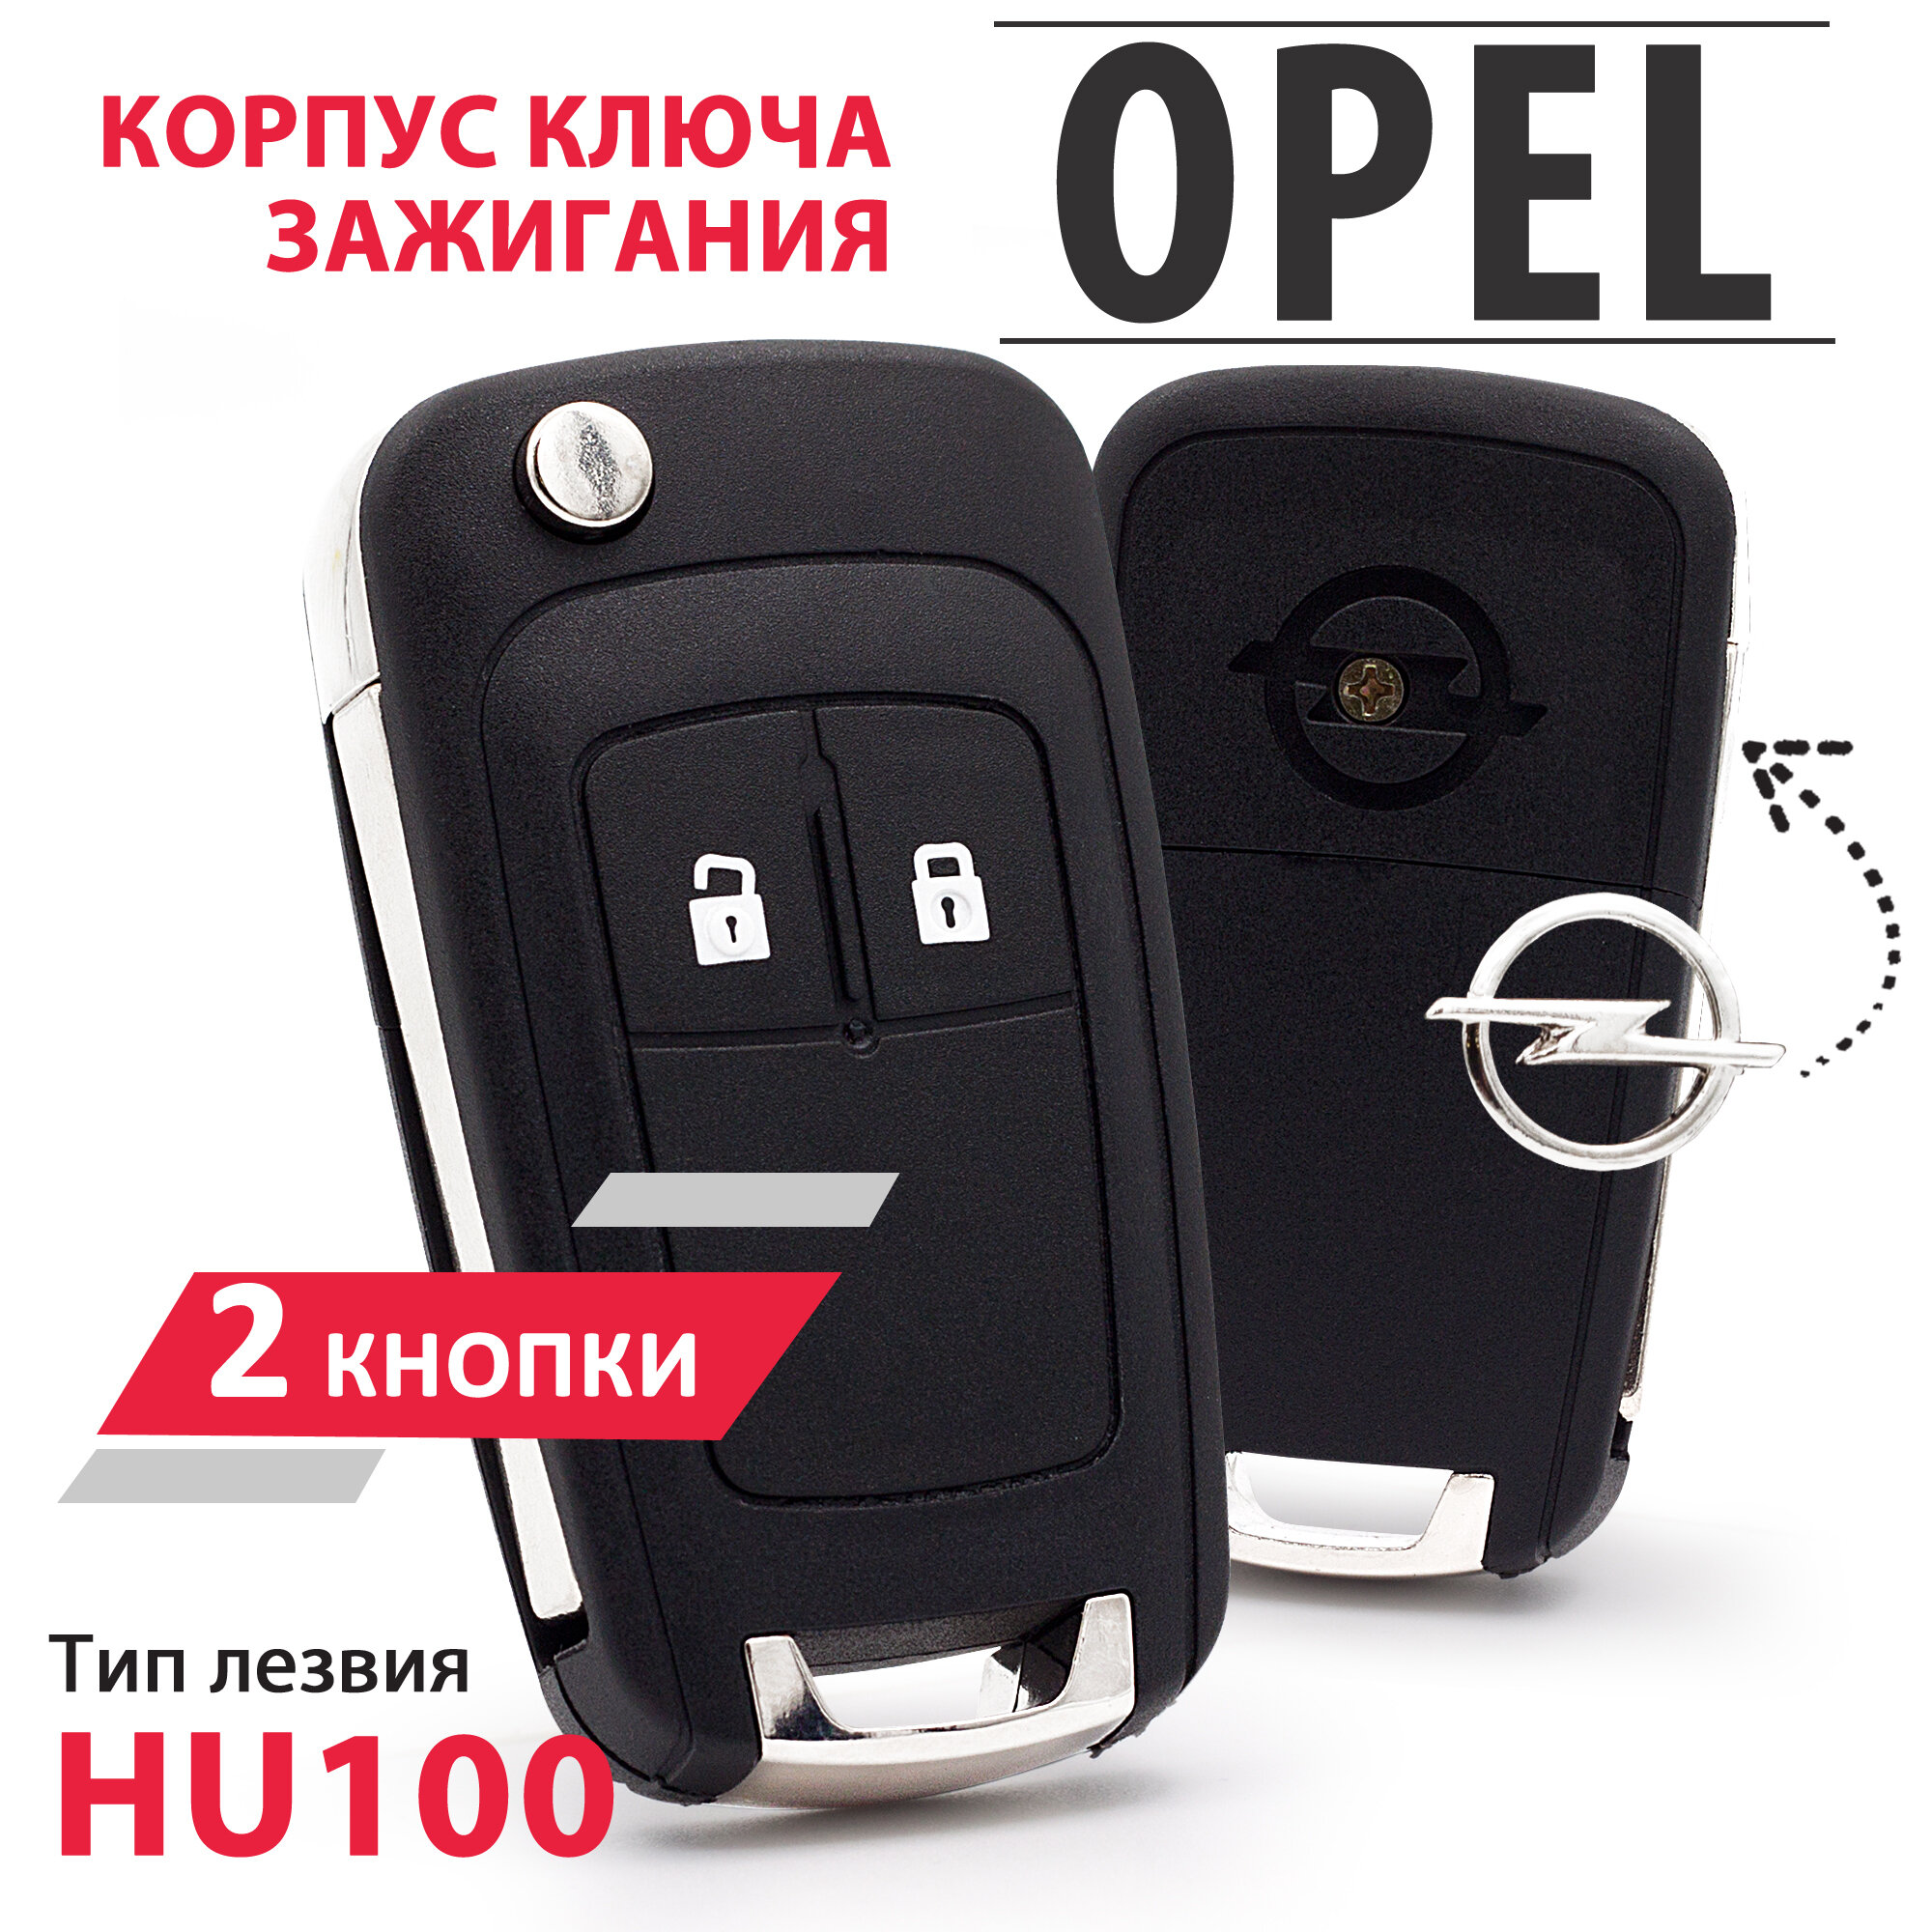 Корпус выкидного ключа для Opel Antara Astra Family Corsa Insignia Mokka Vectra Zafira - 1 штука (2 кнопочный ключ лезвие HU100)